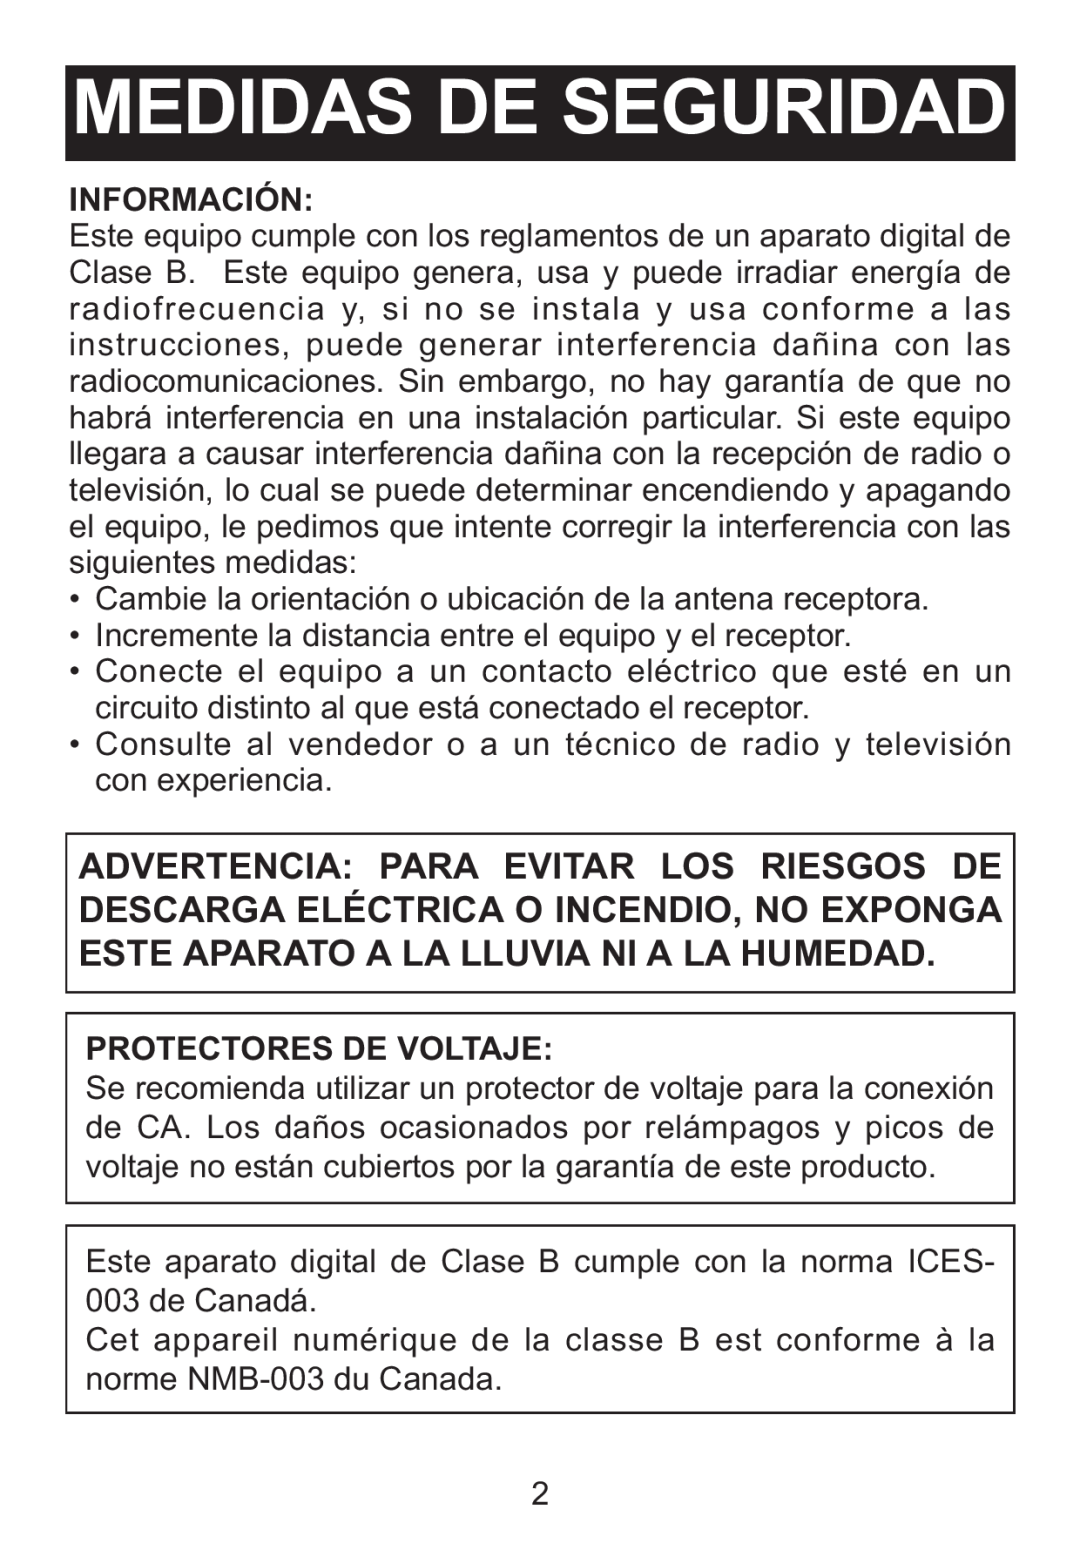 Memorex M12001 manual Información, Protectores De Voltaje, Medidas De Seguridad 